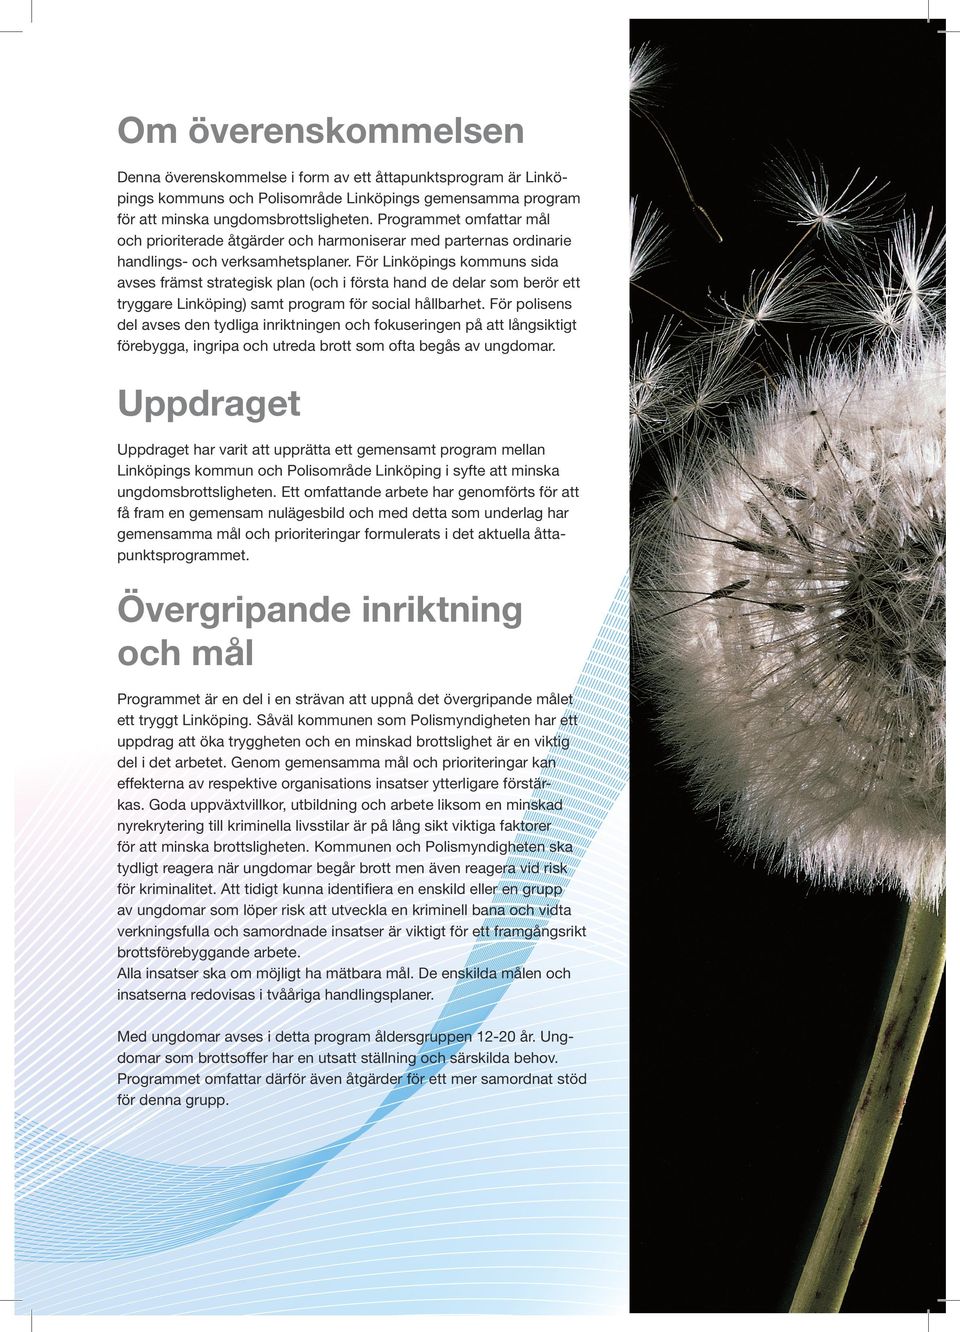 För Linköpings kommuns sida avses främst strategisk plan (och i första hand de delar som berör ett tryggare Linköping) samt program för social hållbarhet.